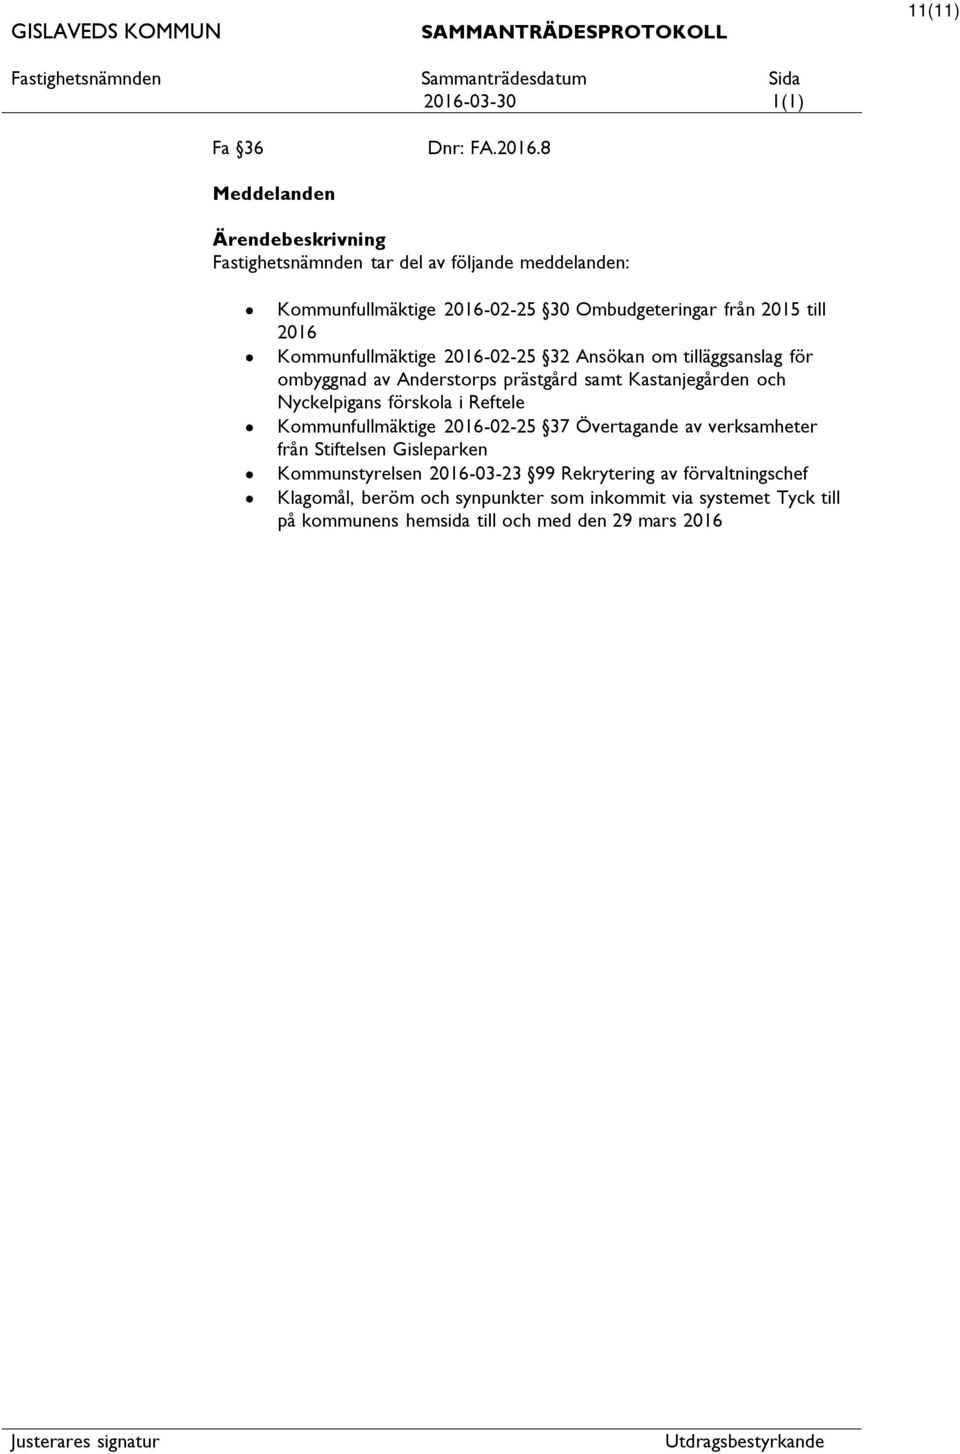 Kommunfullmäktige 2016-02-25 32 Ansökan om tilläggsanslag för ombyggnad av Anderstorps prästgård samt Kastanjegården och Nyckelpigans förskola i